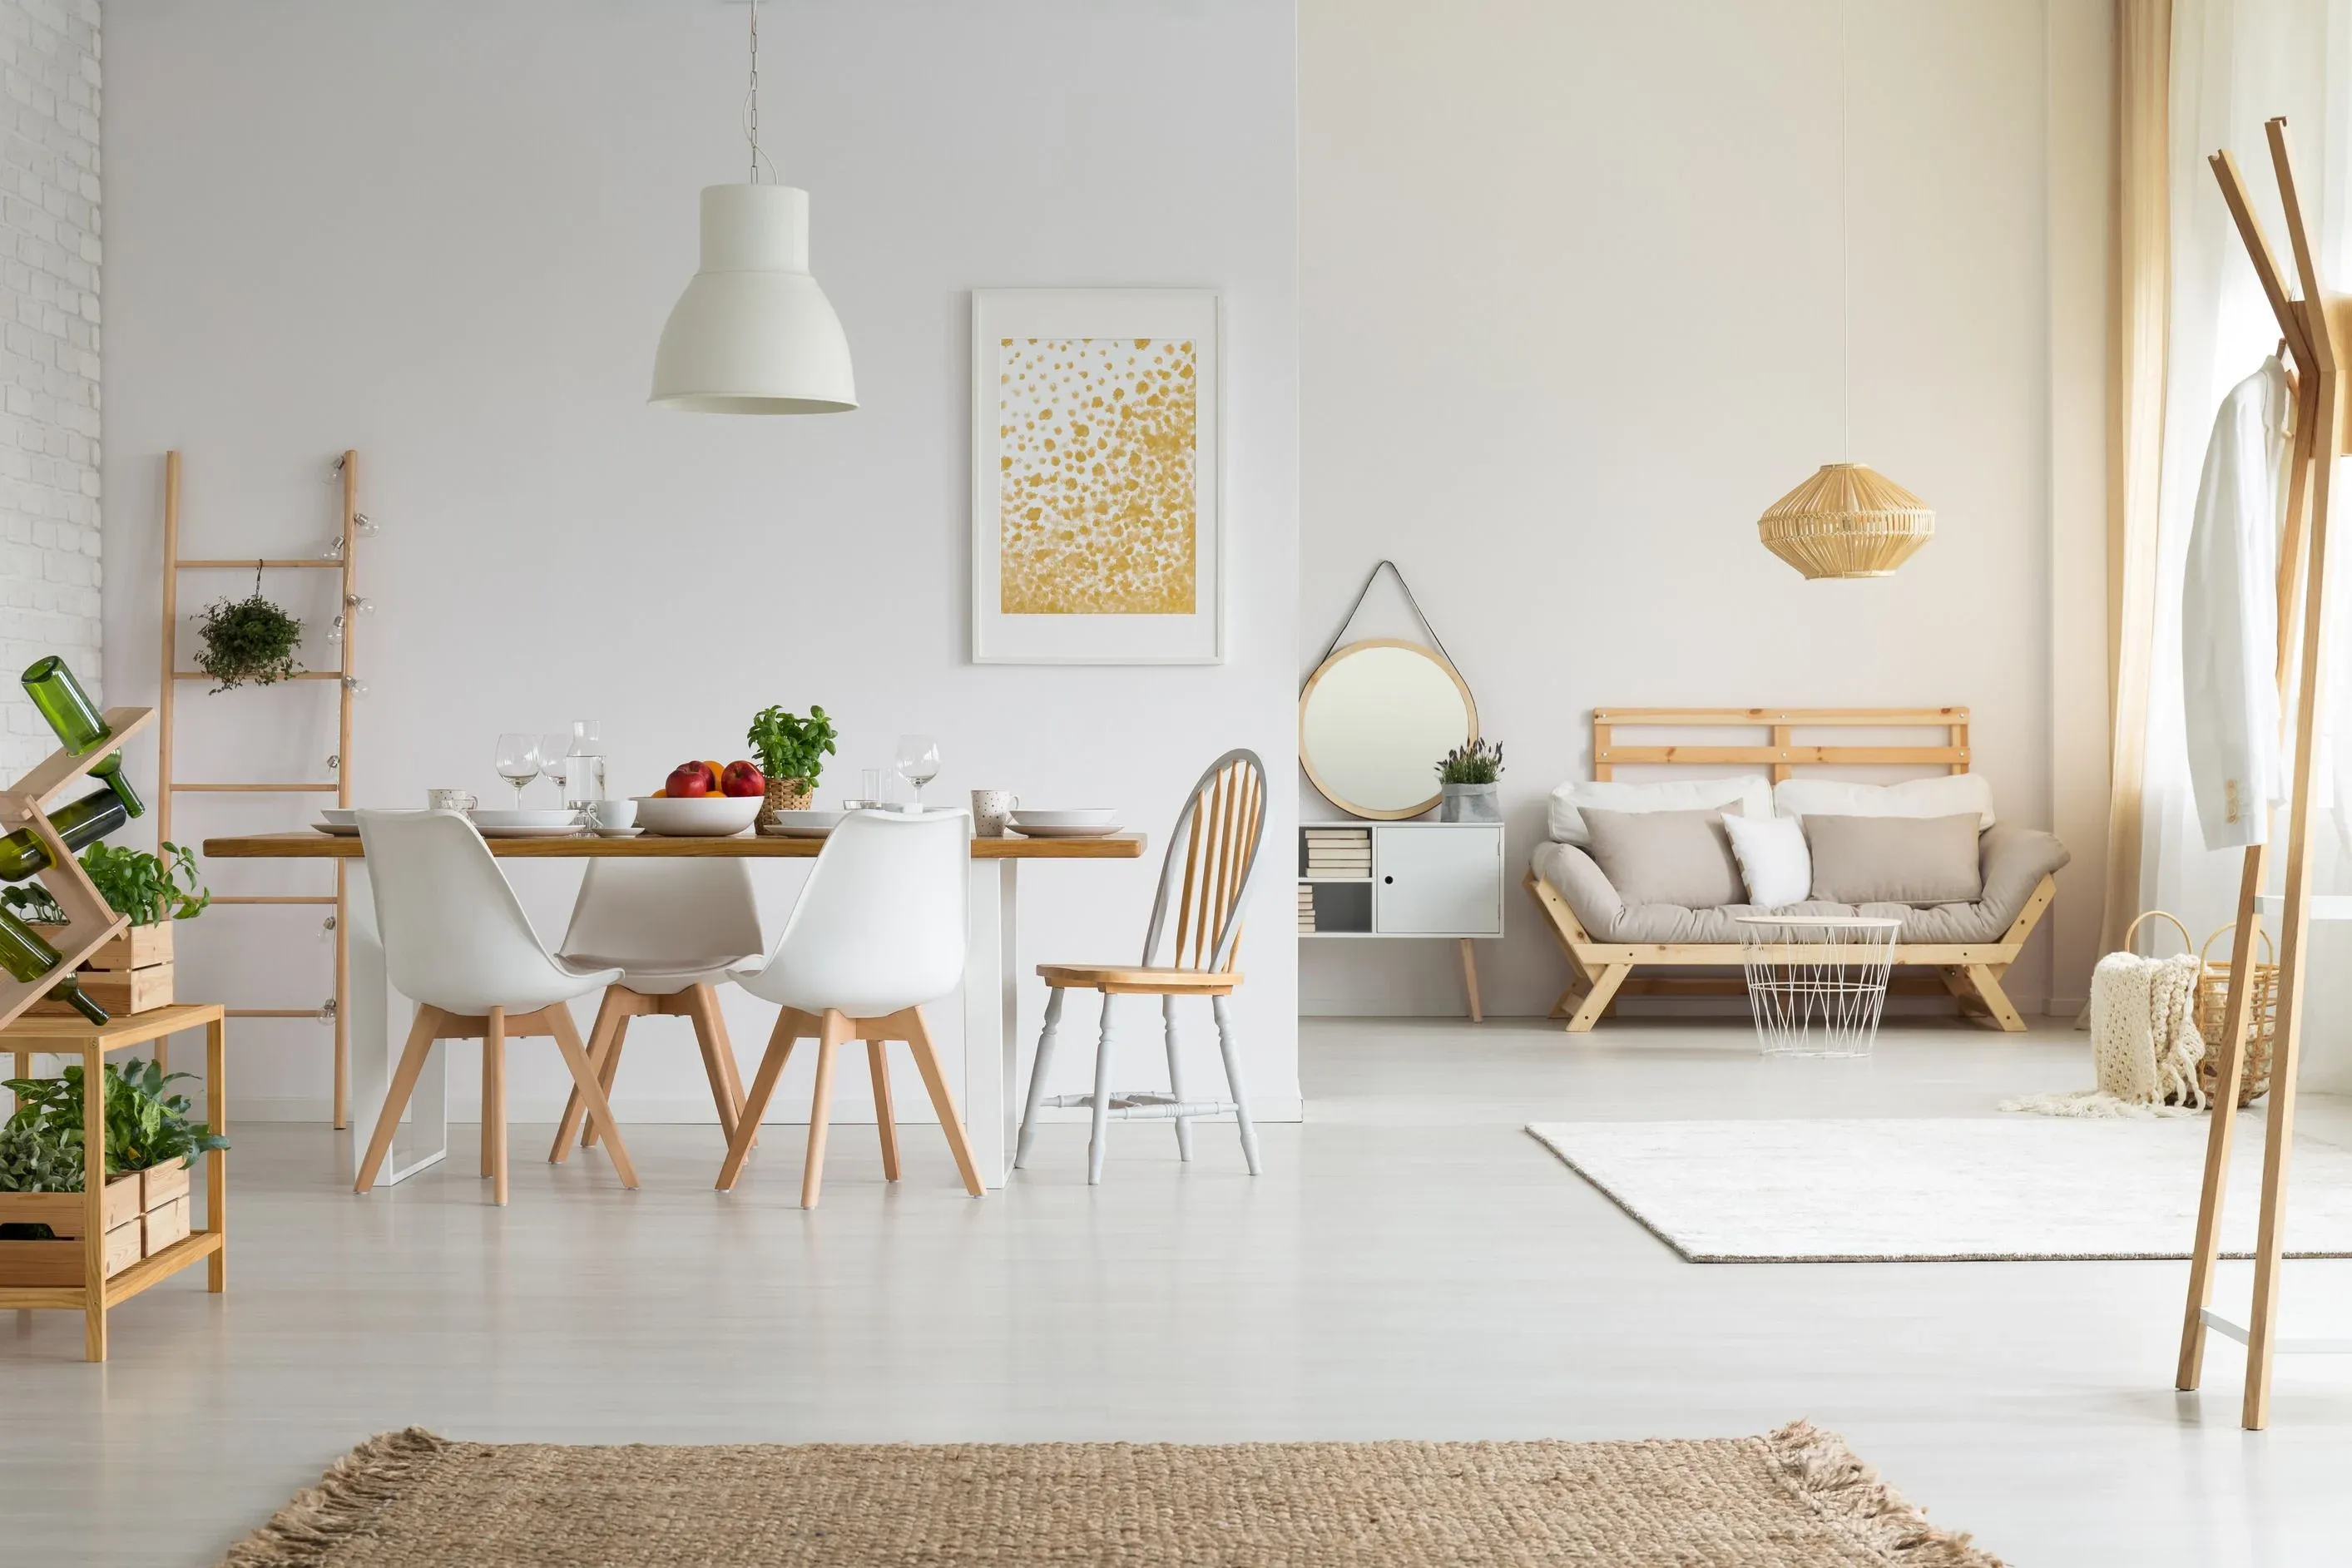 Recibidor nórdico madera y blanco. Muebles estilo escandinavo.